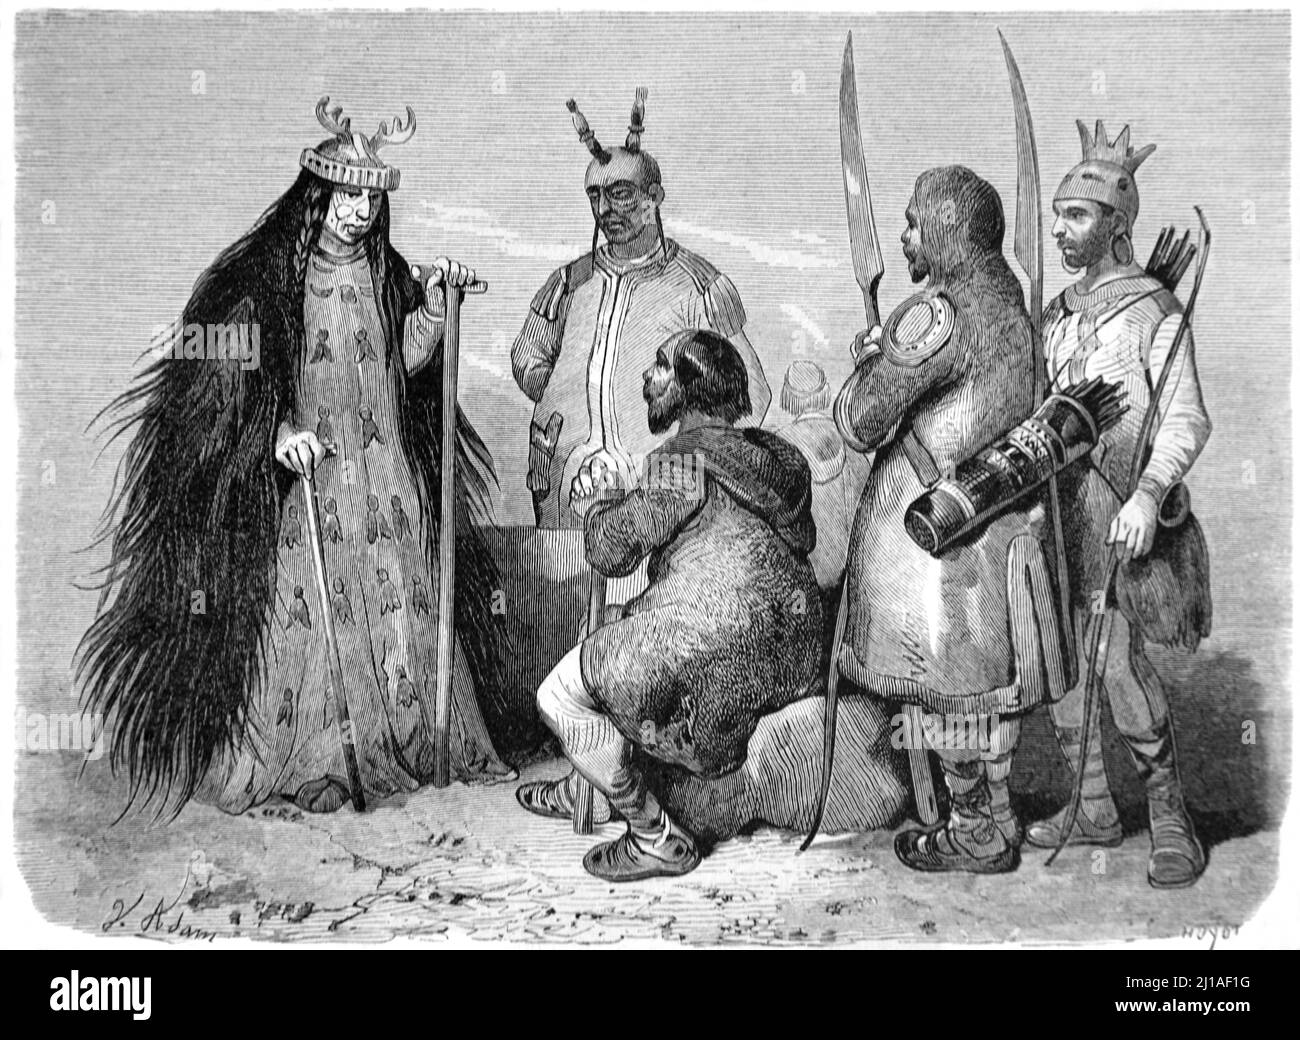 Tungusic o Evenk Sorcerer e Evenk persone o indigeni della Siberia Russia & Nord Asia. Illustrazione o incisione 1860. Foto Stock